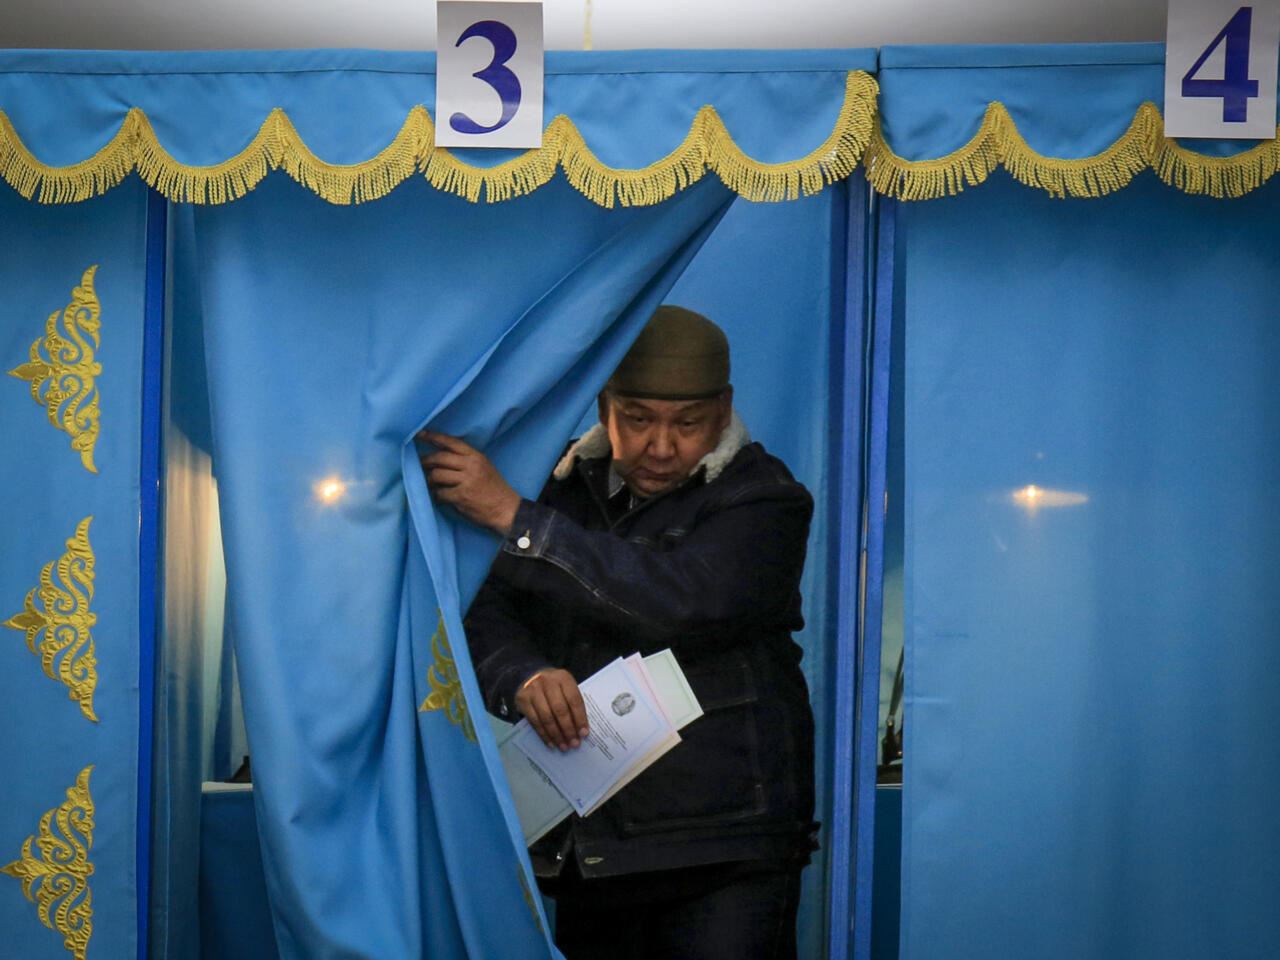 انتخابات تشريعية أكثر انفتاحًا في كازاخستان